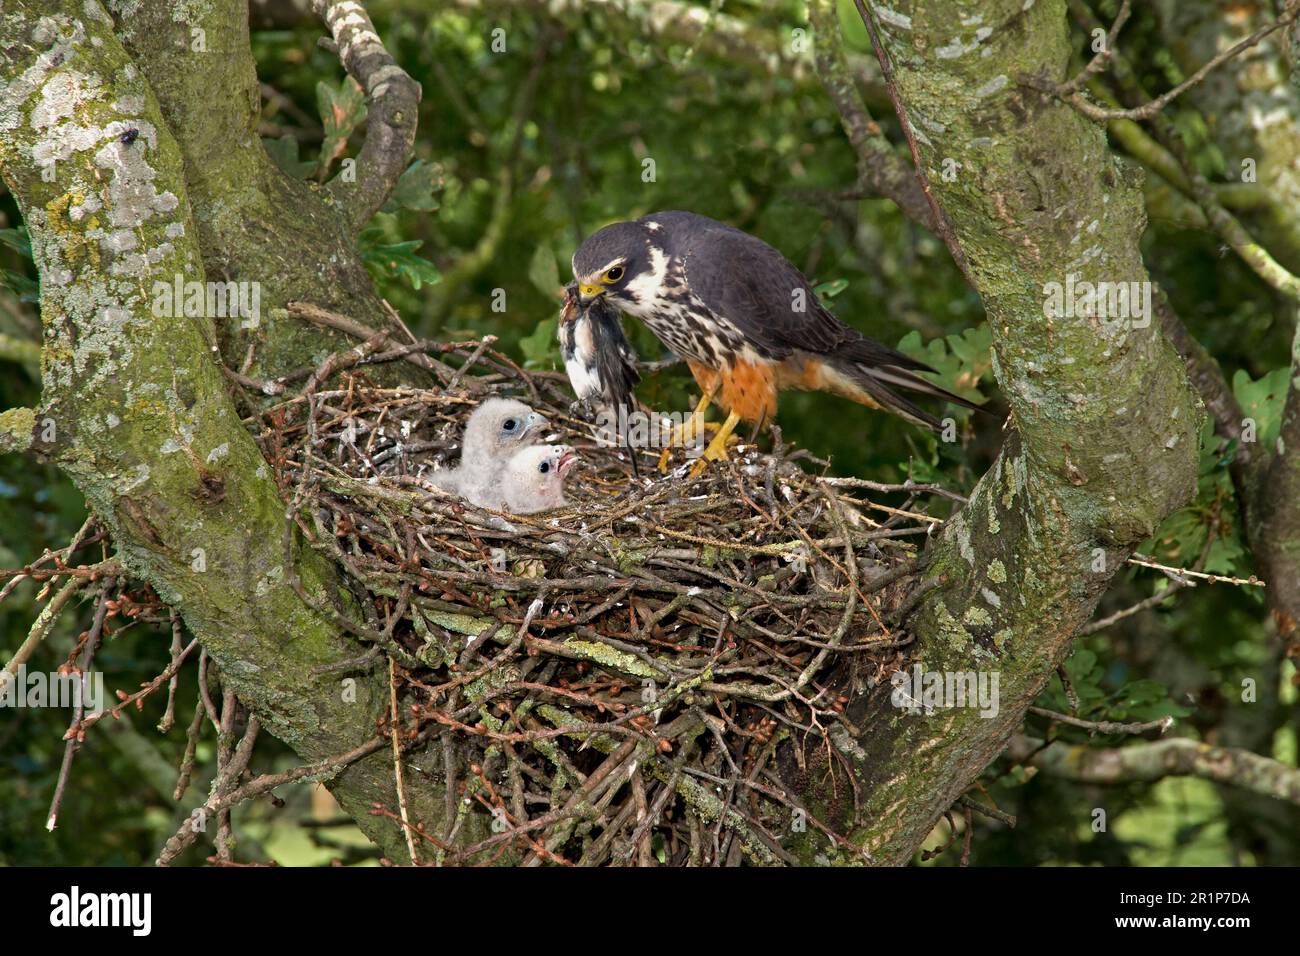 Eurasisches eurasisches Hobby (Falco subbuteo), Erwachsene weibliche Fütterungsküken (Hirundo rustica) im Nest, die in einem alten Krähennest in Eiche nisten Stockfoto